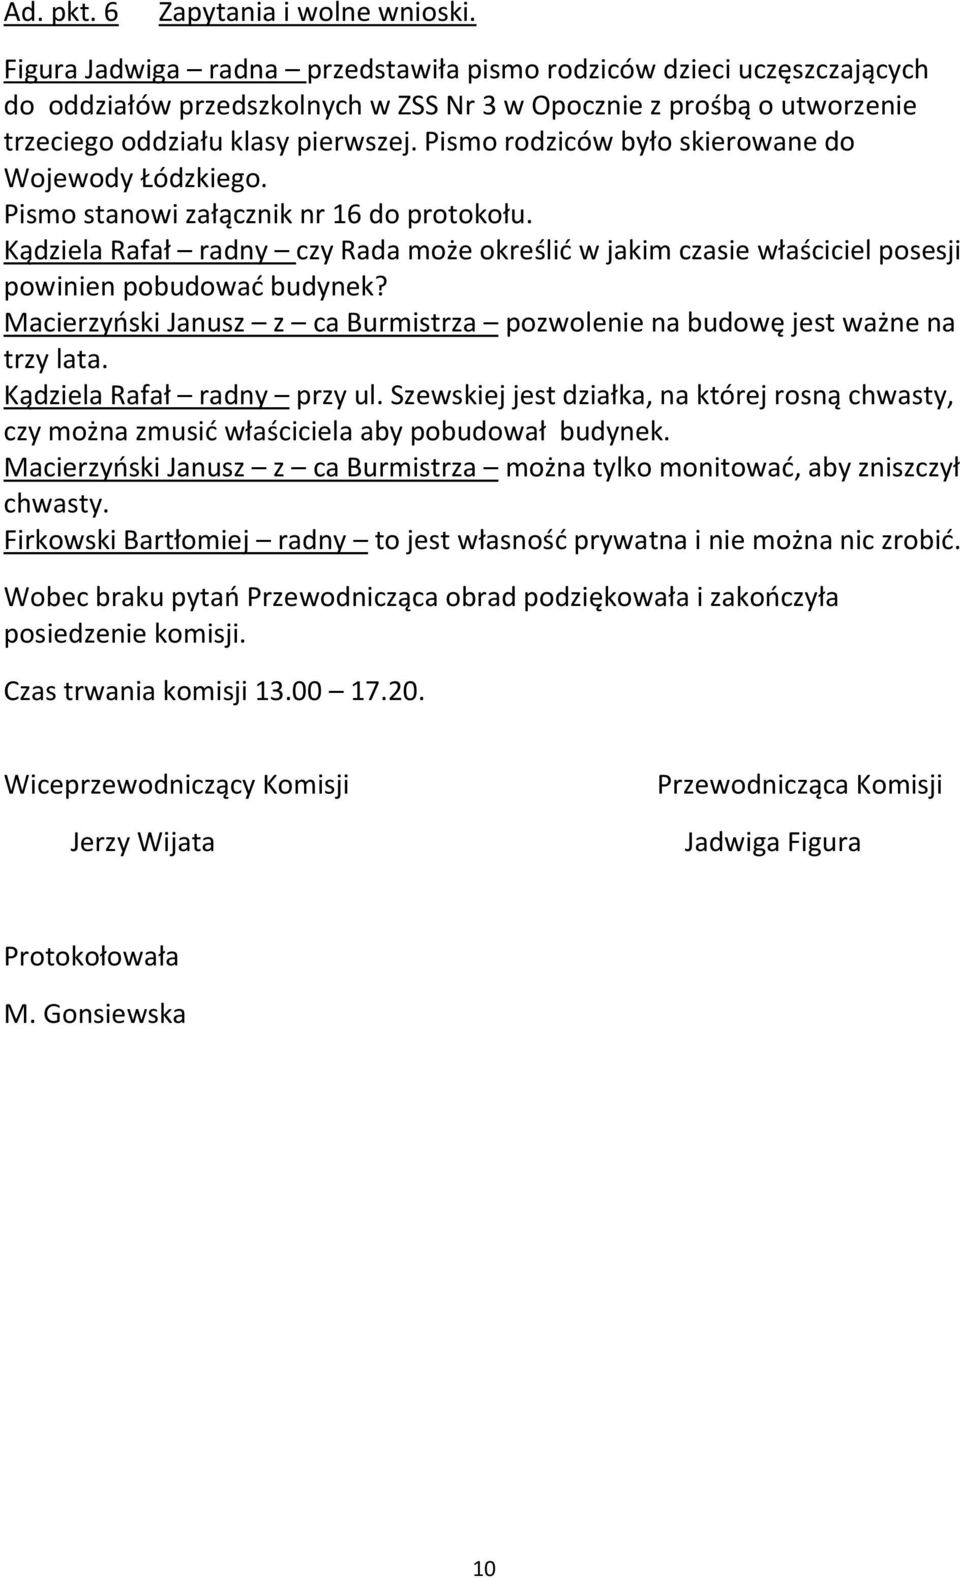 Pismo rodziców było skierowane do Wojewody Łódzkiego. Pismo stanowi załącznik nr 16 do protokołu.